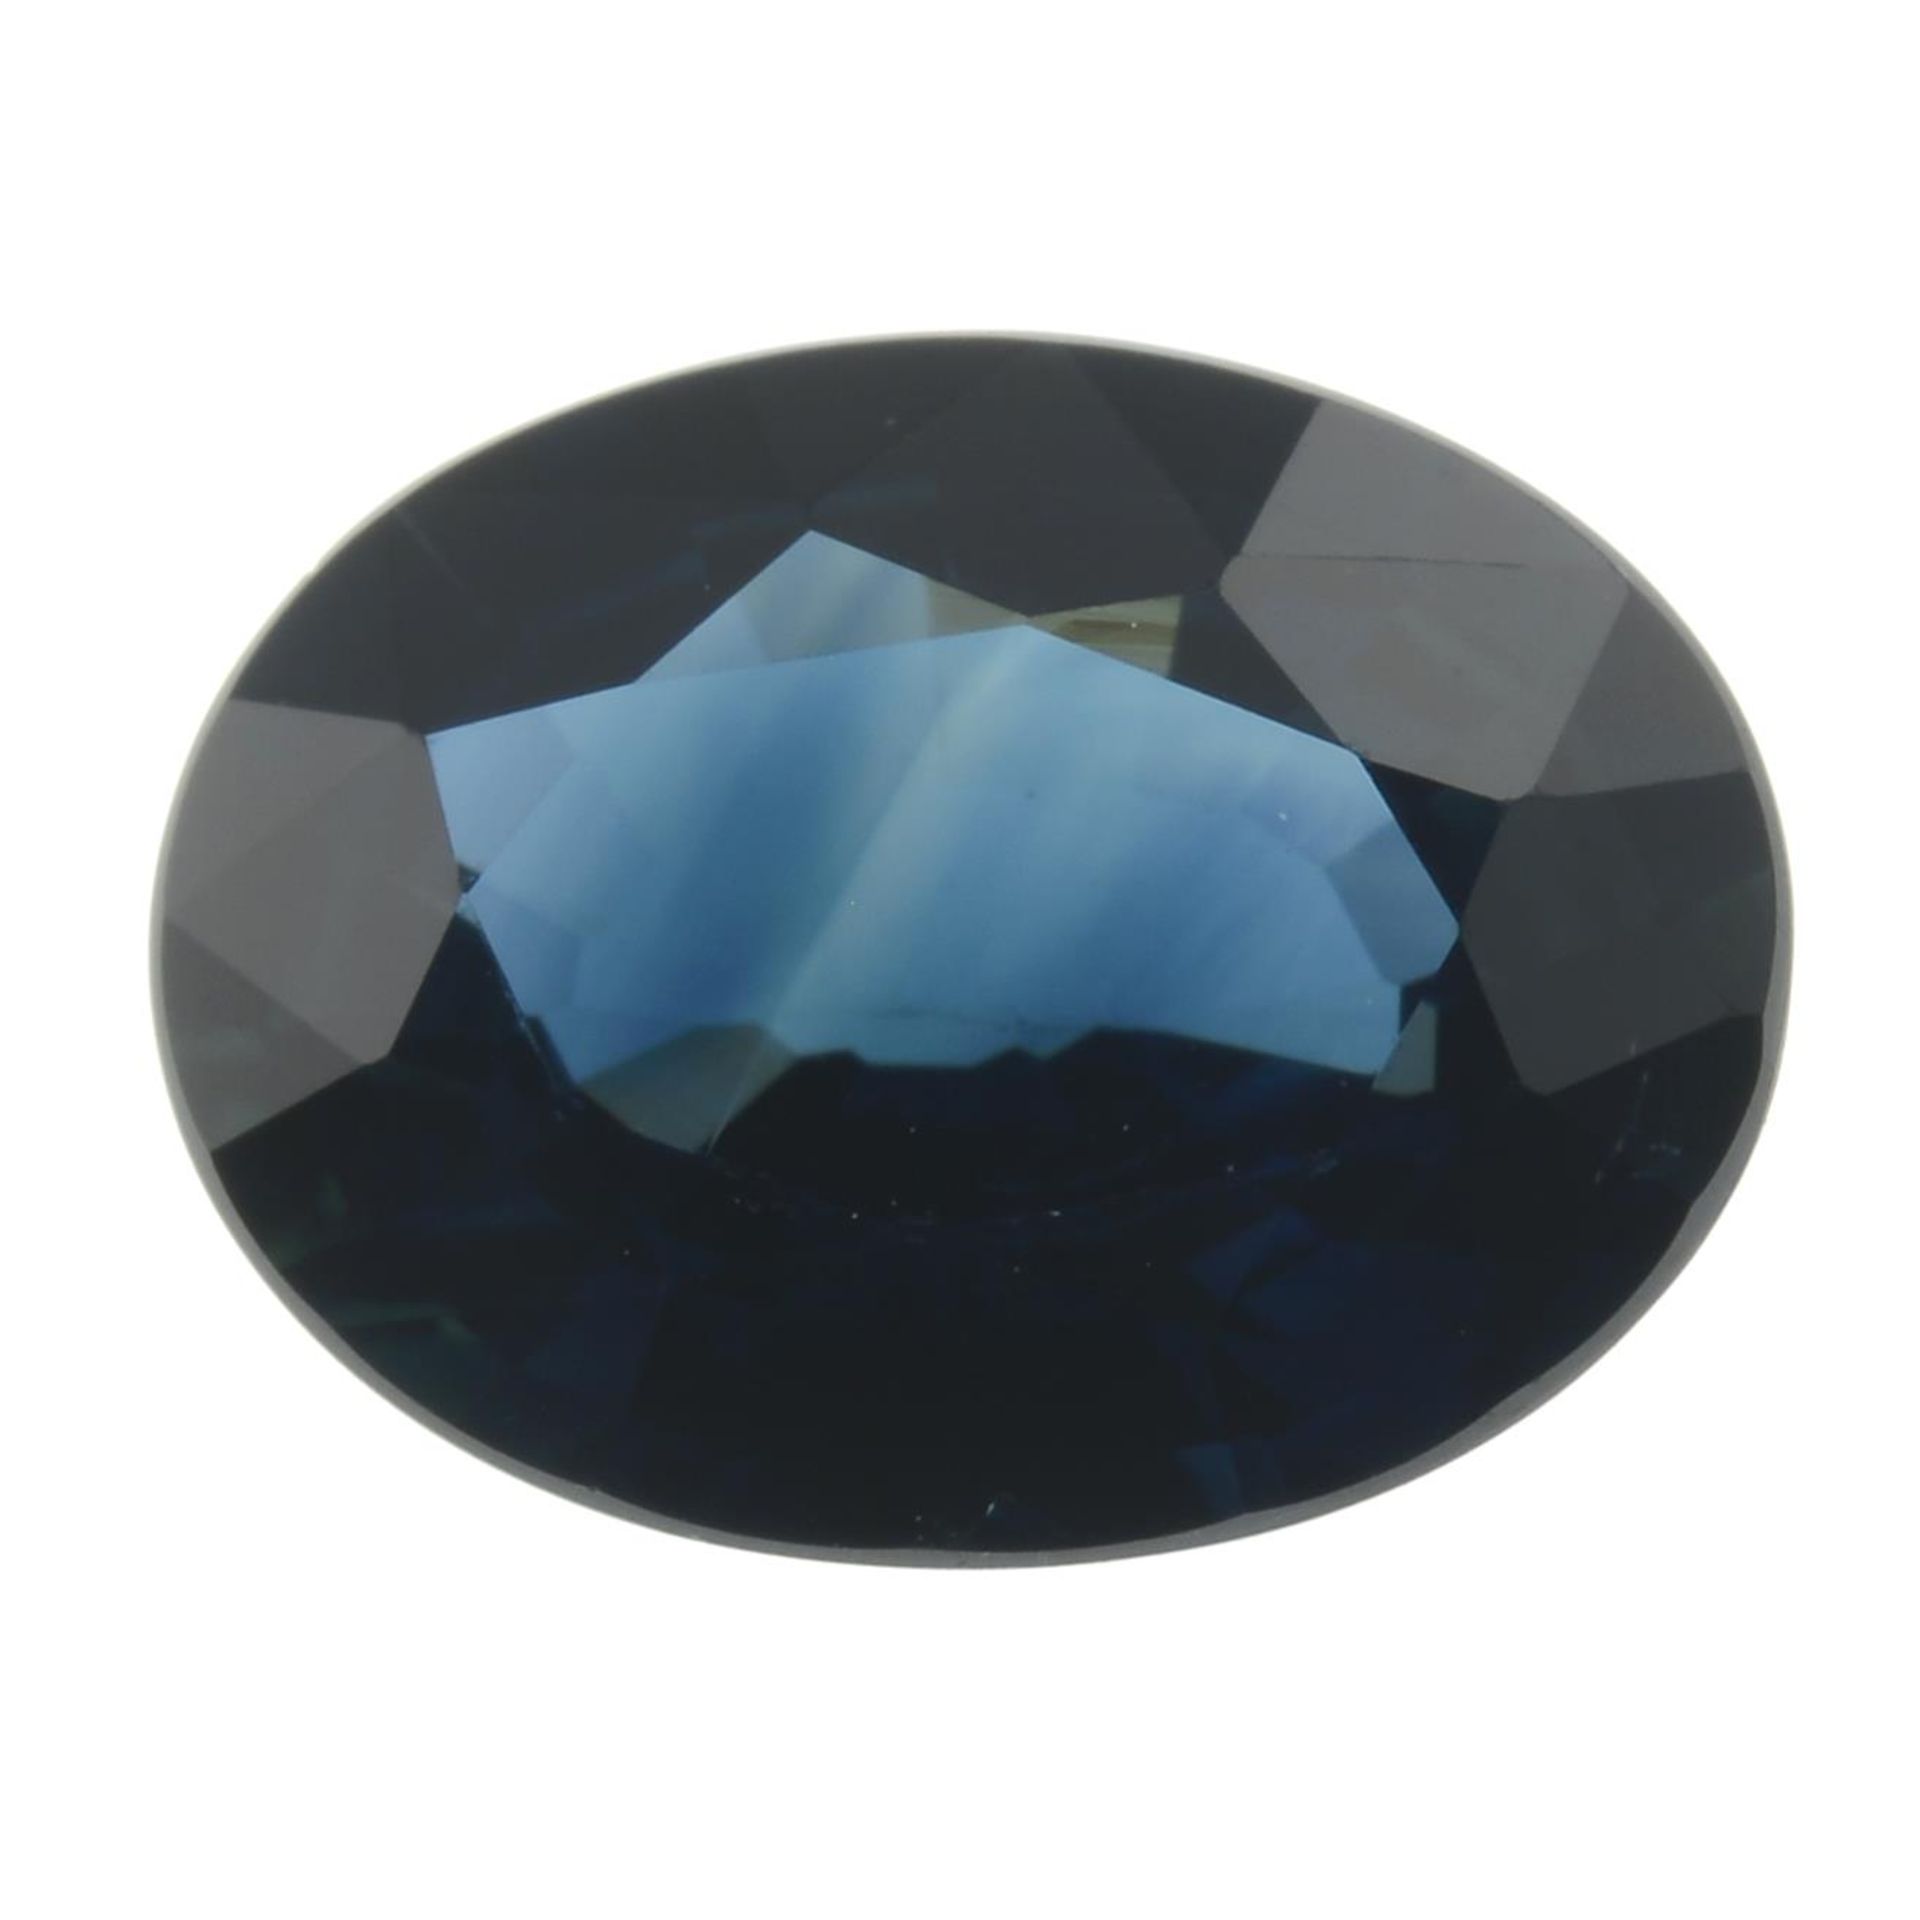 An oval-shape sapphire.